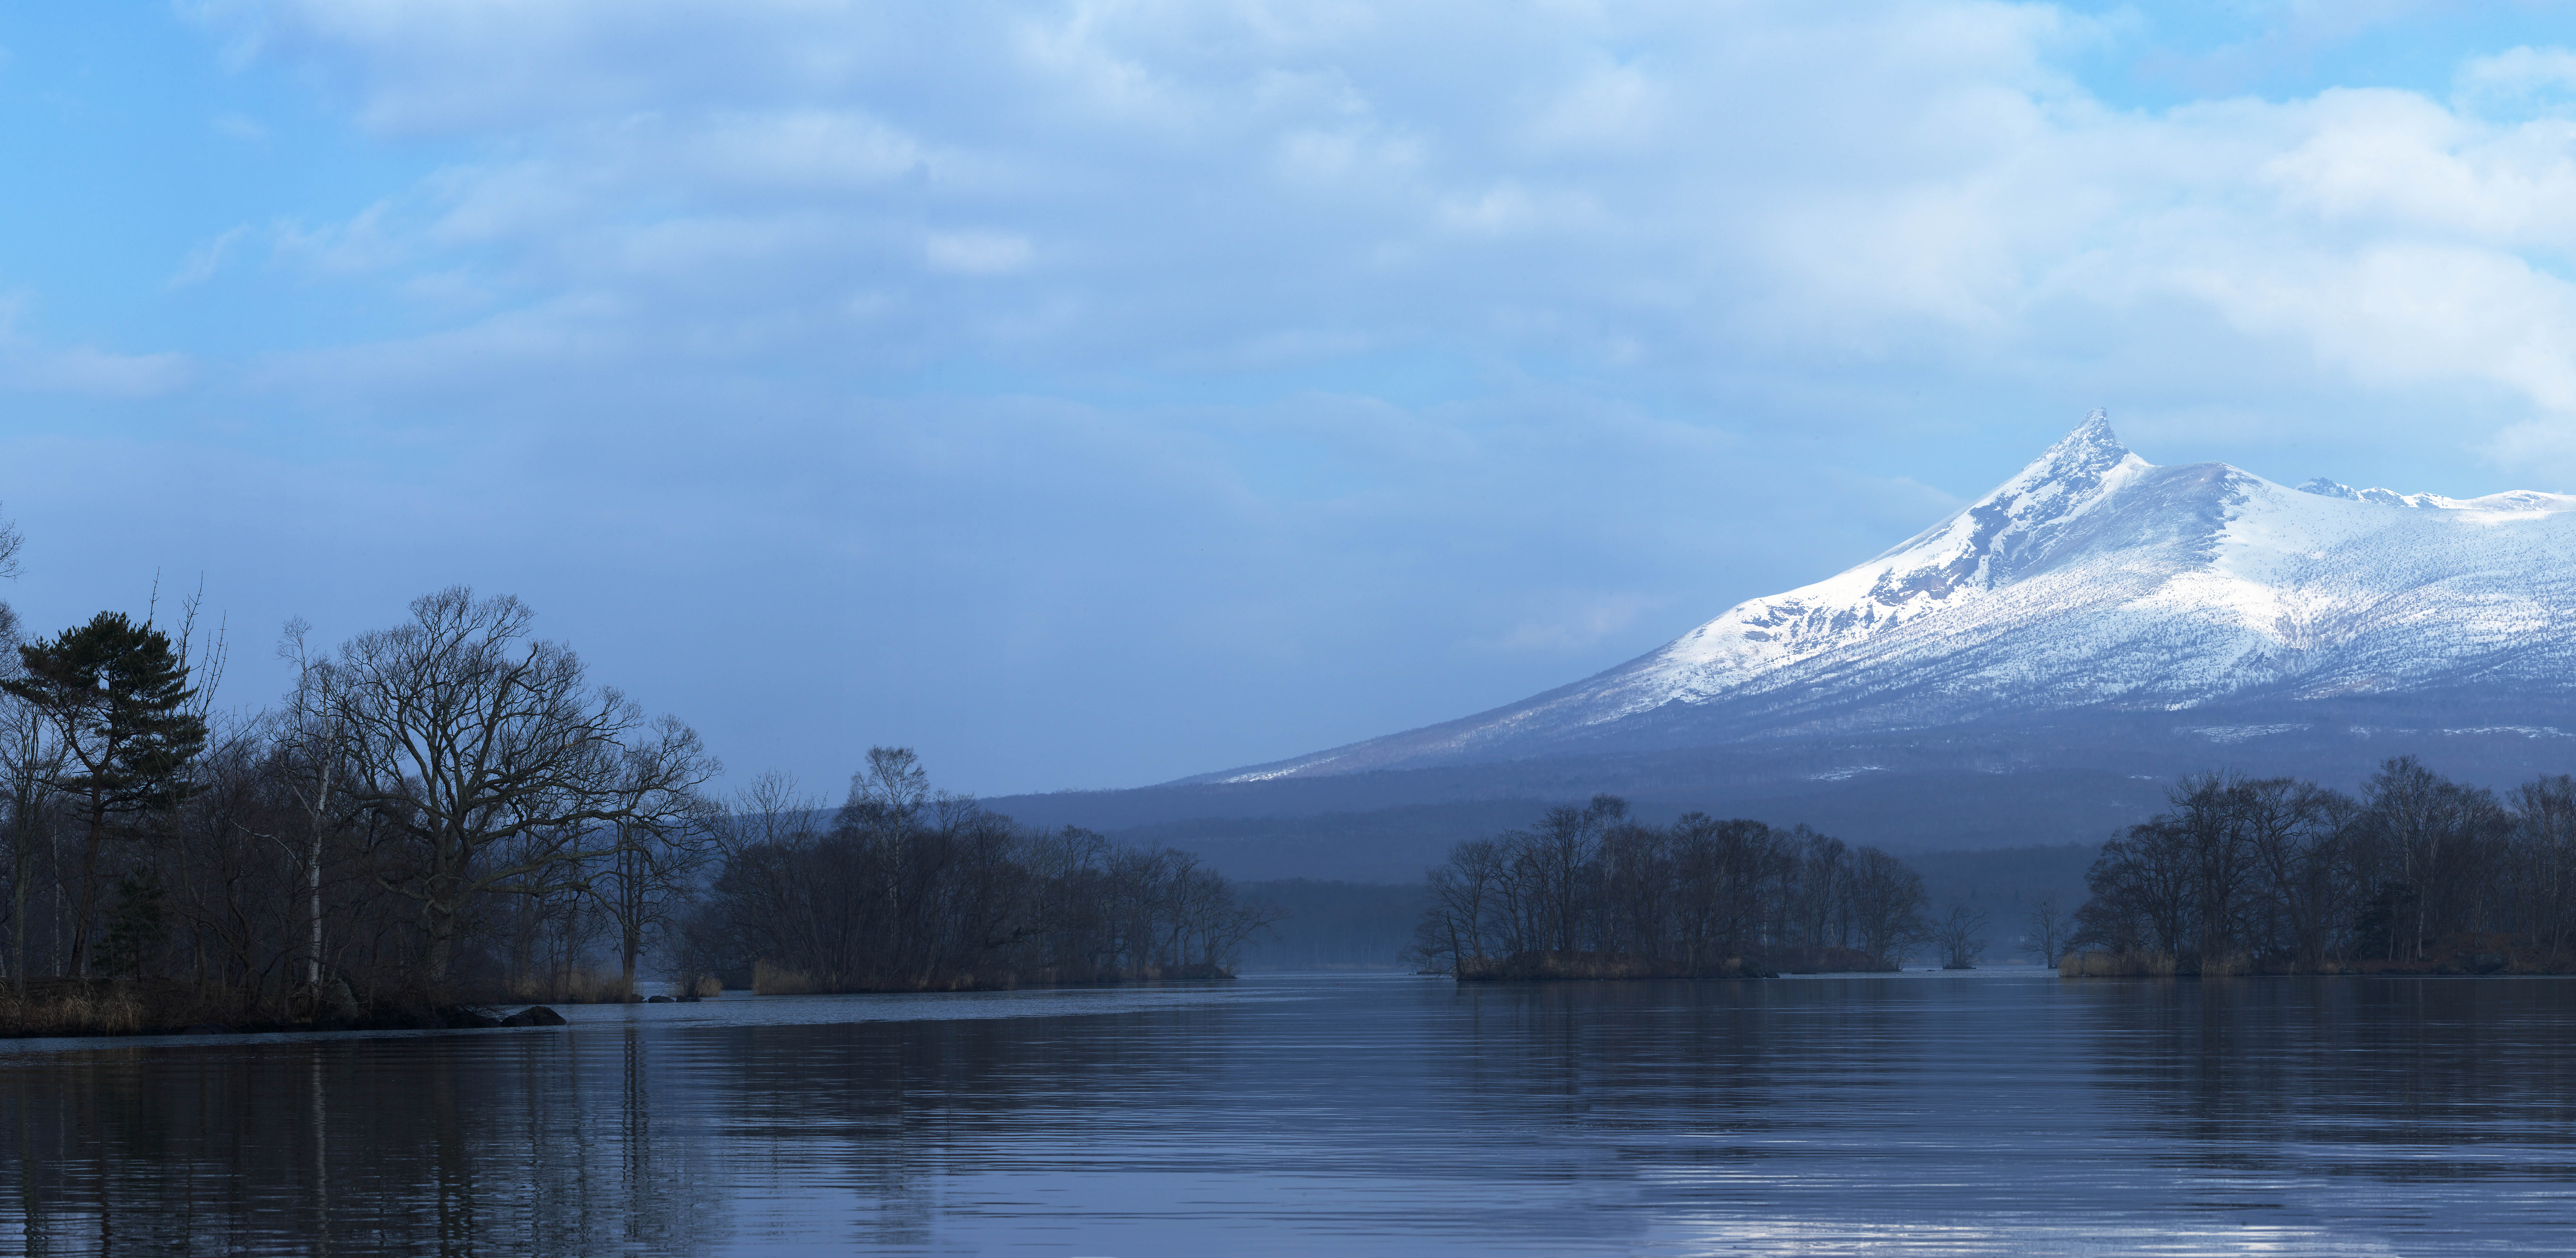 photo, la matire, libre, amnage, dcrivez, photo de la rserve,Onumakoen hivernent scne vue entire, , lac, Lac Onuma, ciel bleu